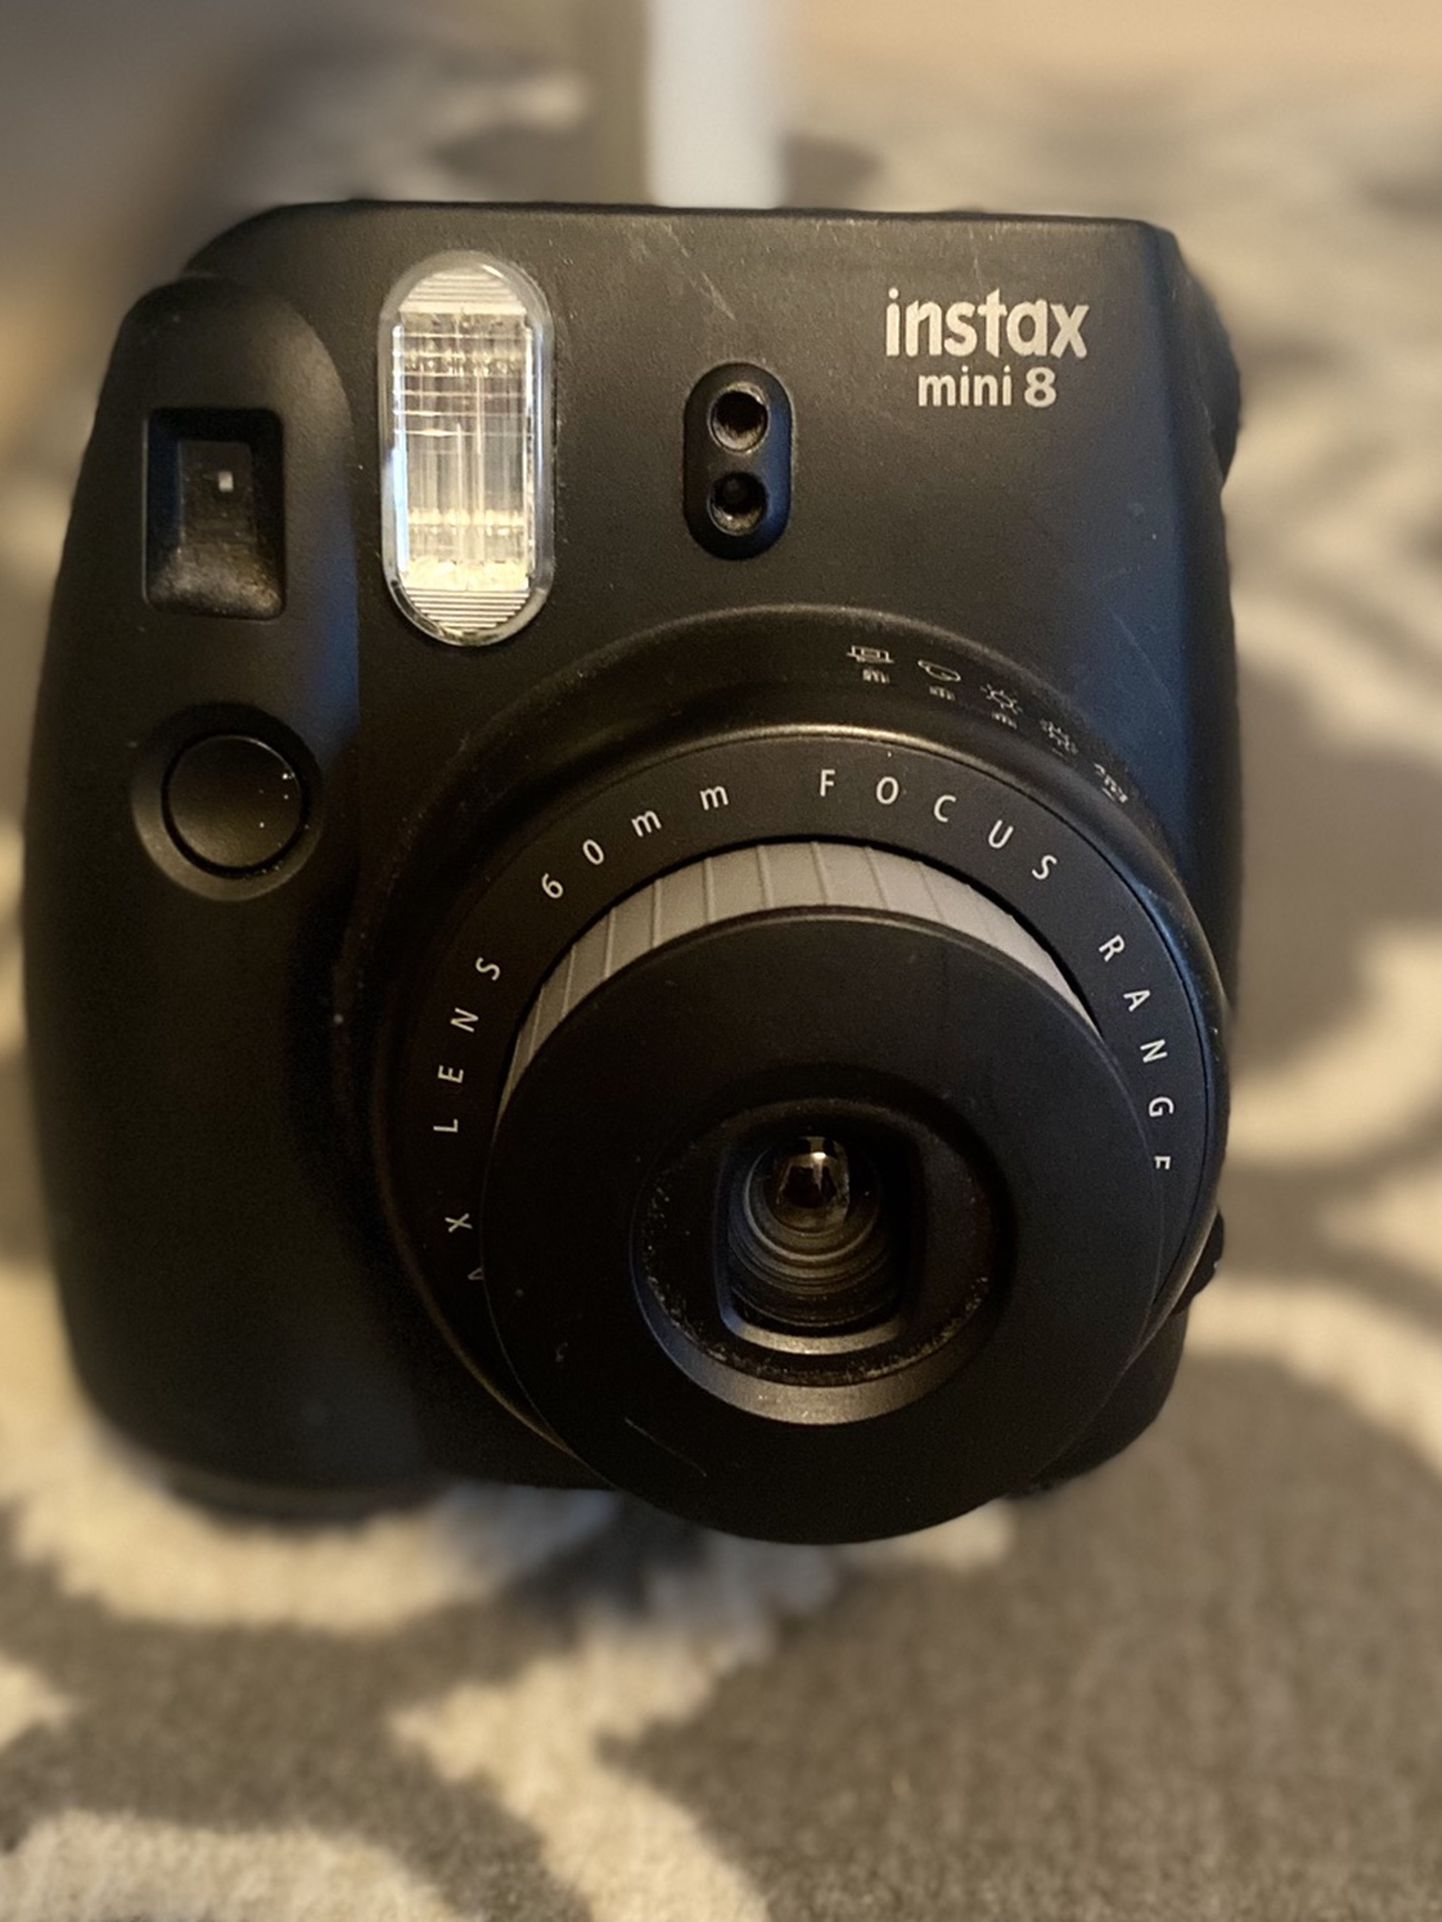 Intax Instant Film Camera Polaroid Fuji film